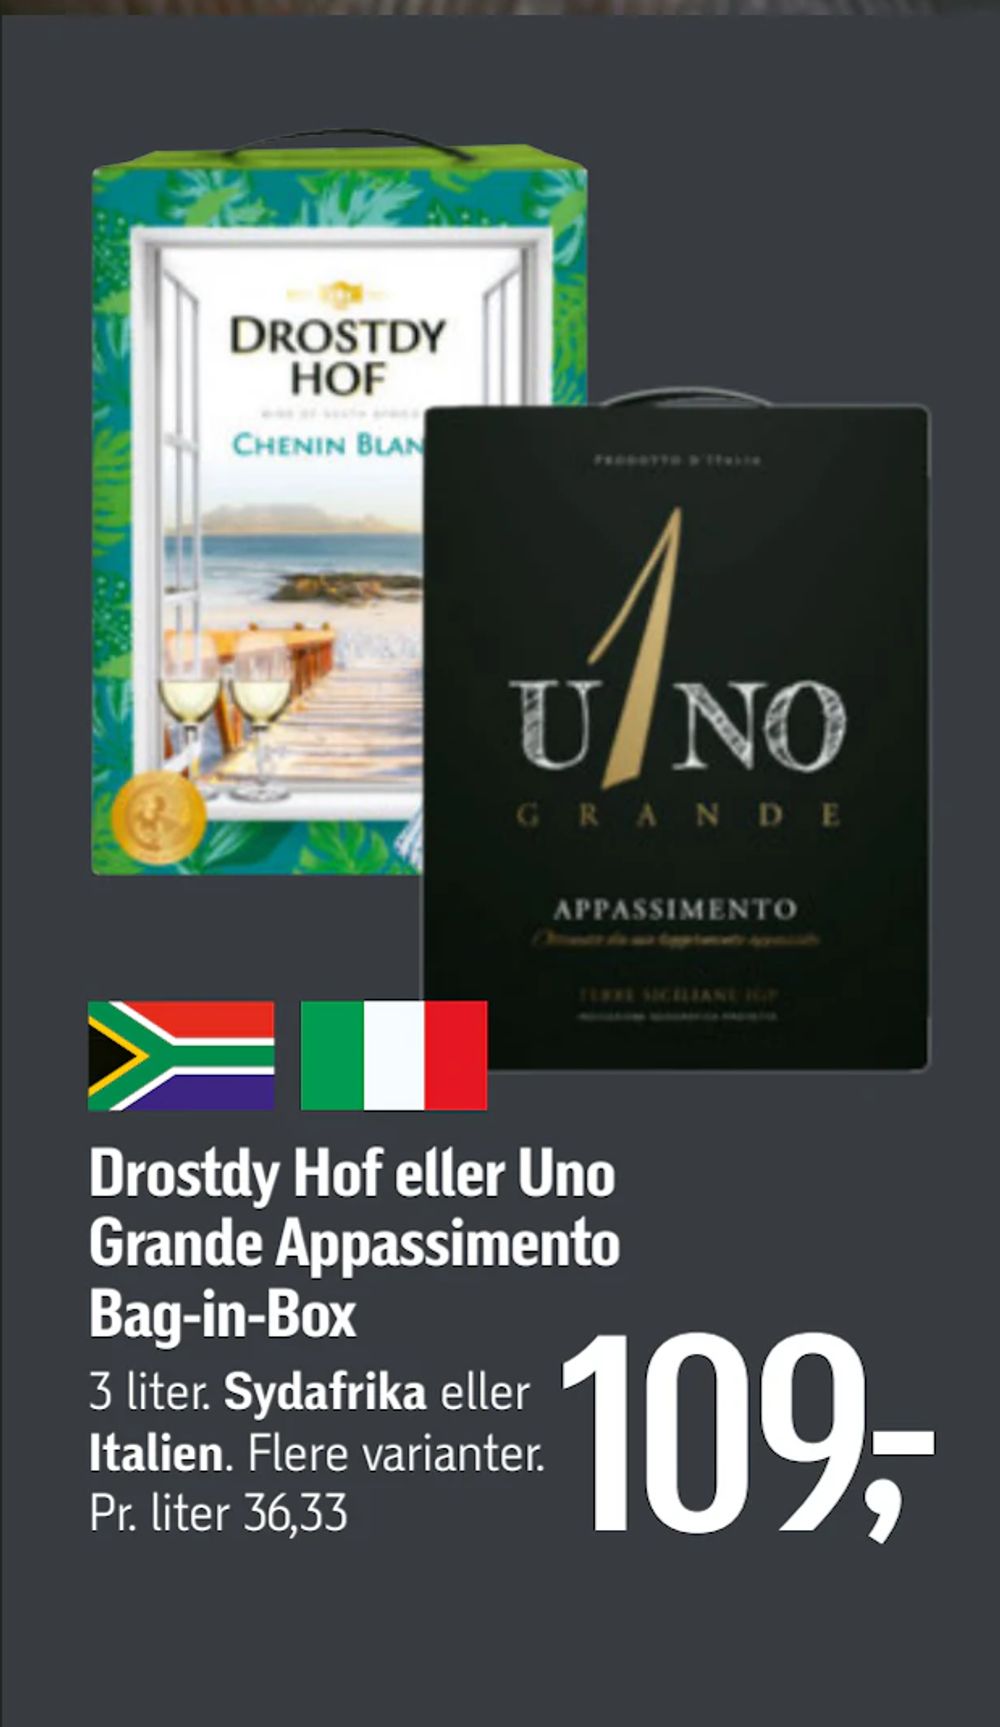 Tilbud på Drostdy Hof eller Uno Grande Appassimento Bag-in-Box fra føtex til 109 kr.